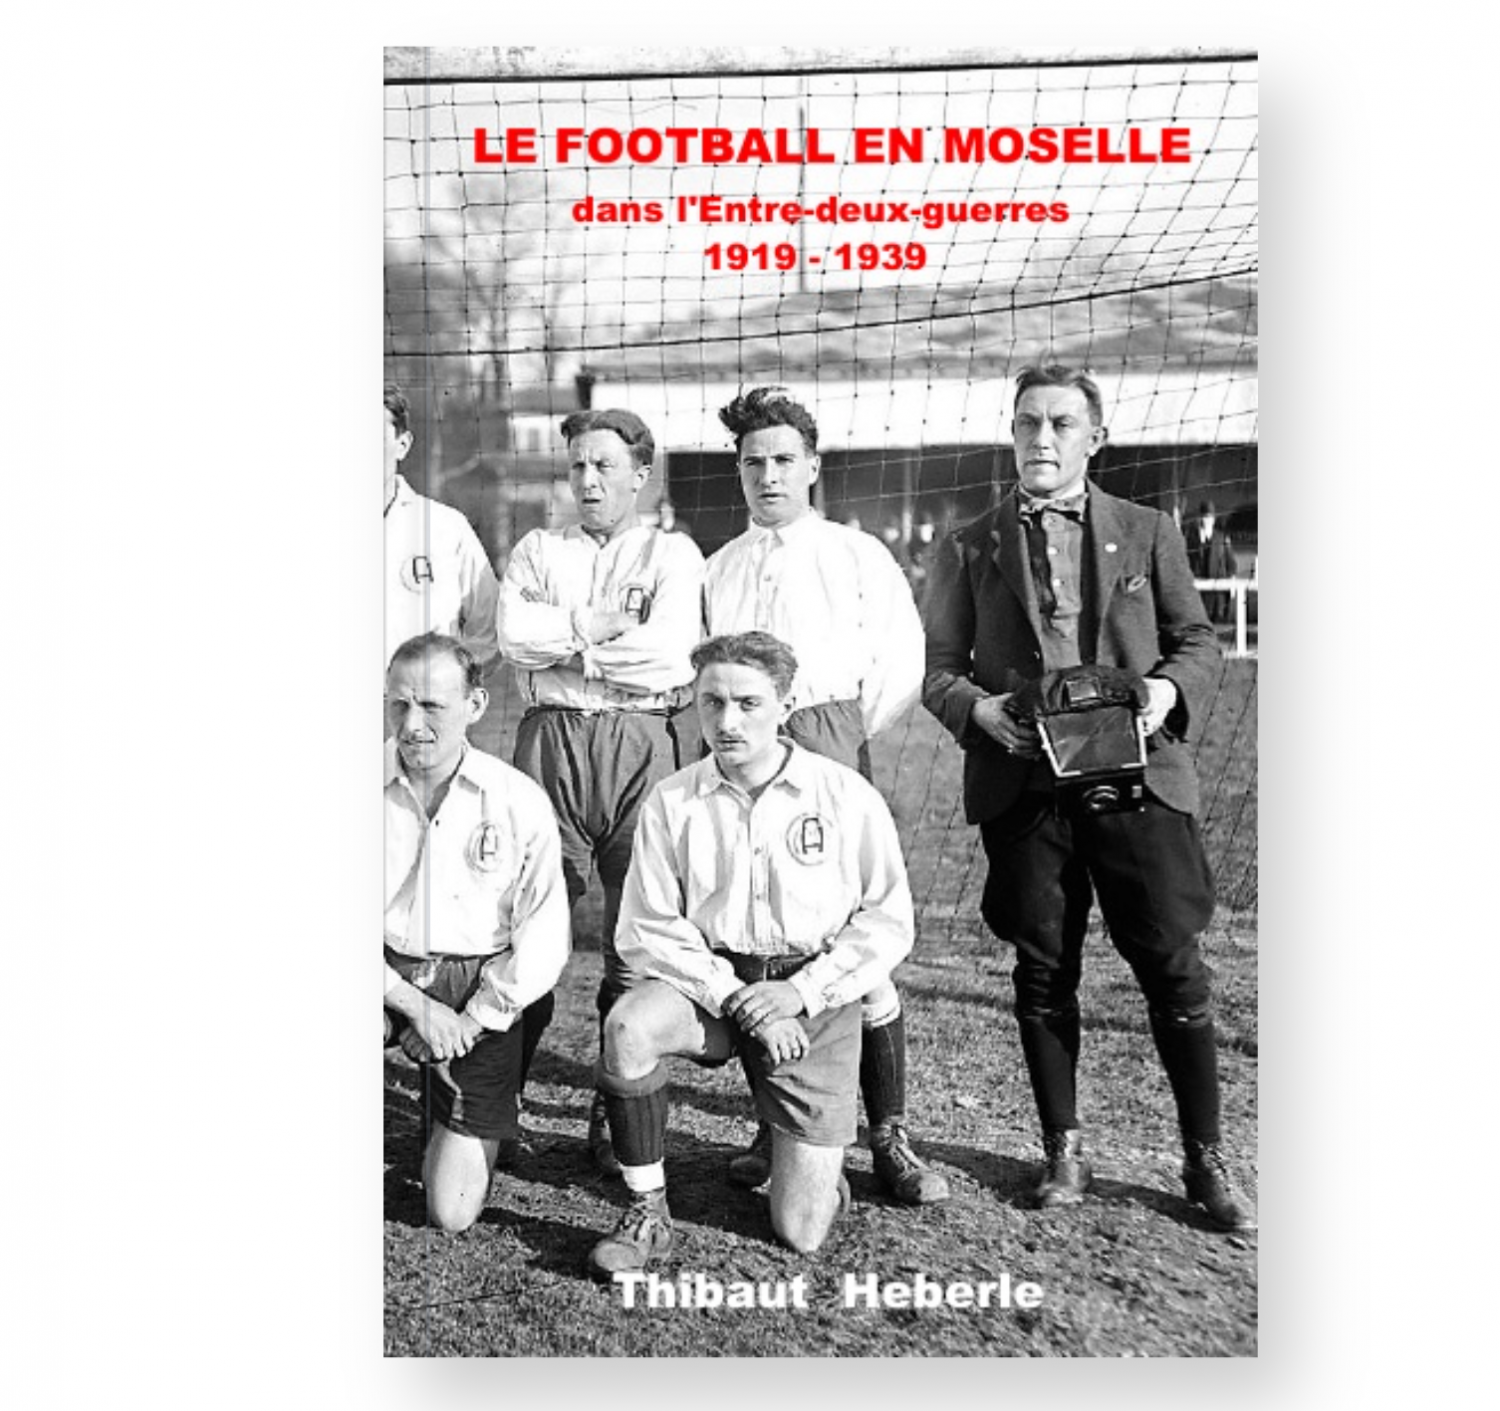 Thibaut Heberlé retrace l'histoire du football en Moselle entre deux guerres